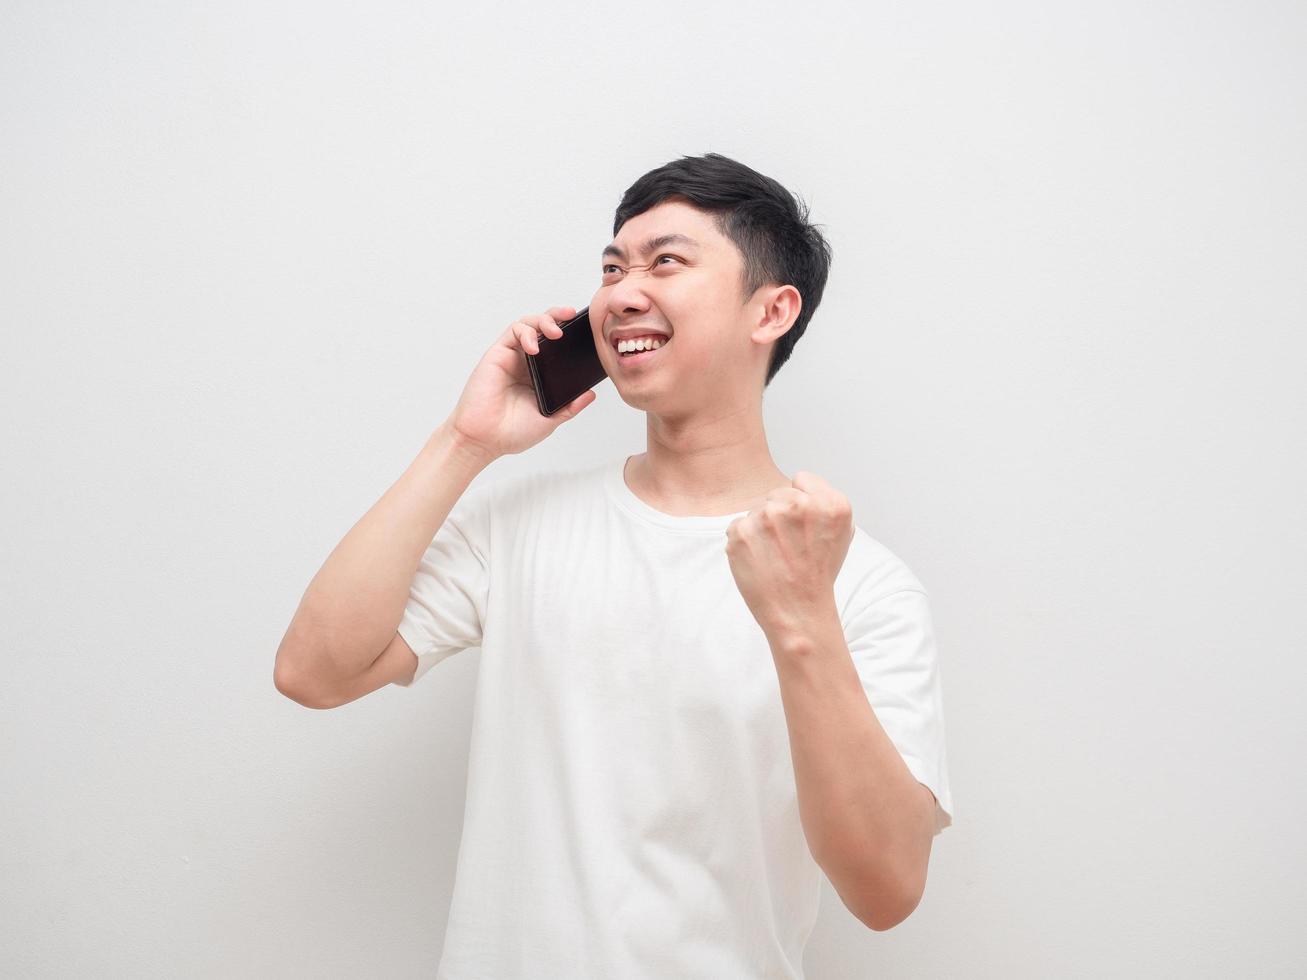 homme parlant avec un téléphone portable montre le poing se sentant heureux sur fond blanc photo